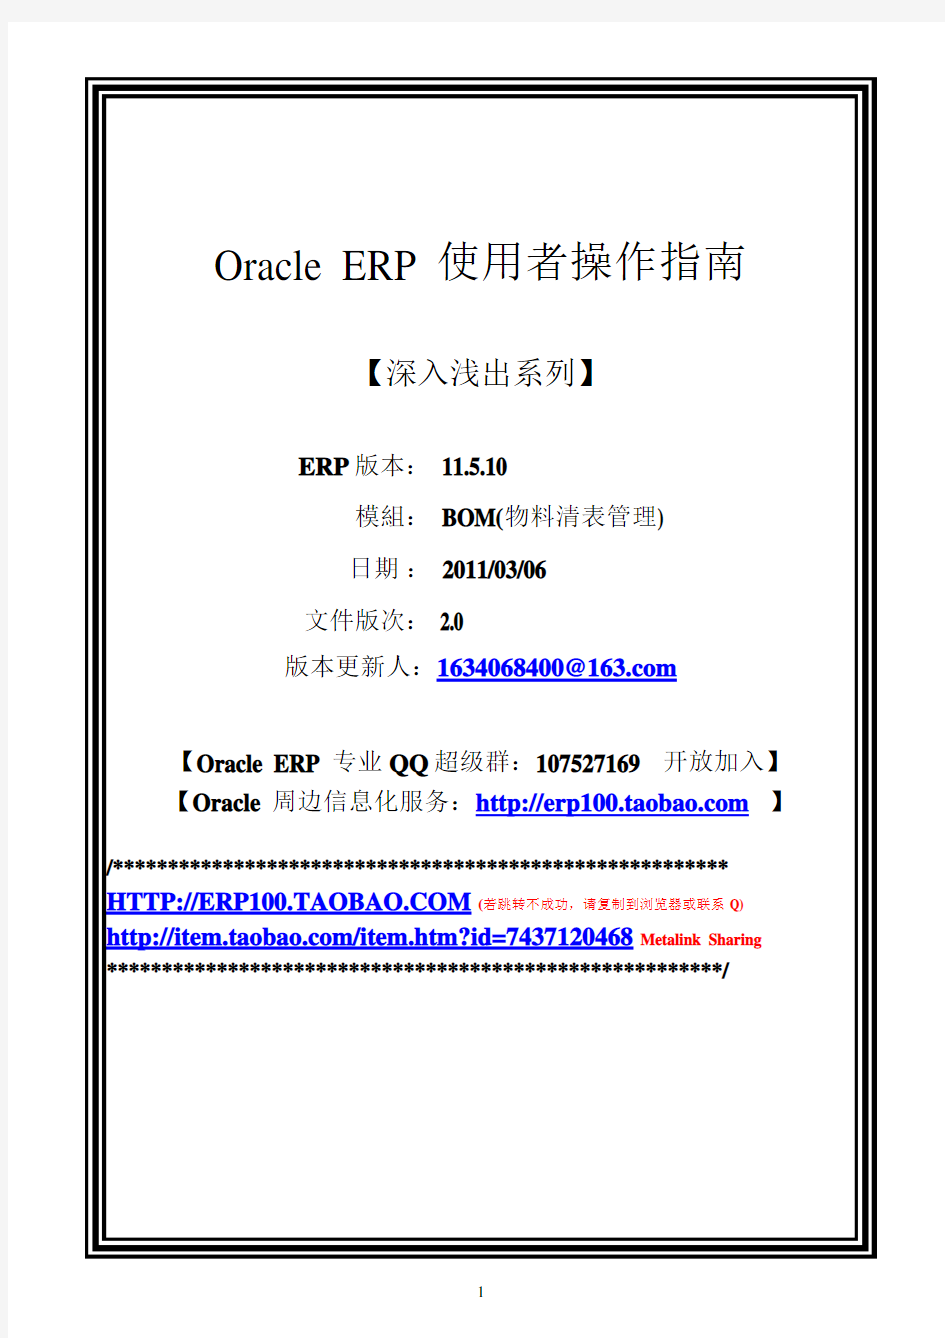 深入浅出之ORACLE_ERP_BOM_USER_GUIDE_物料清单管理_中文_操作指南